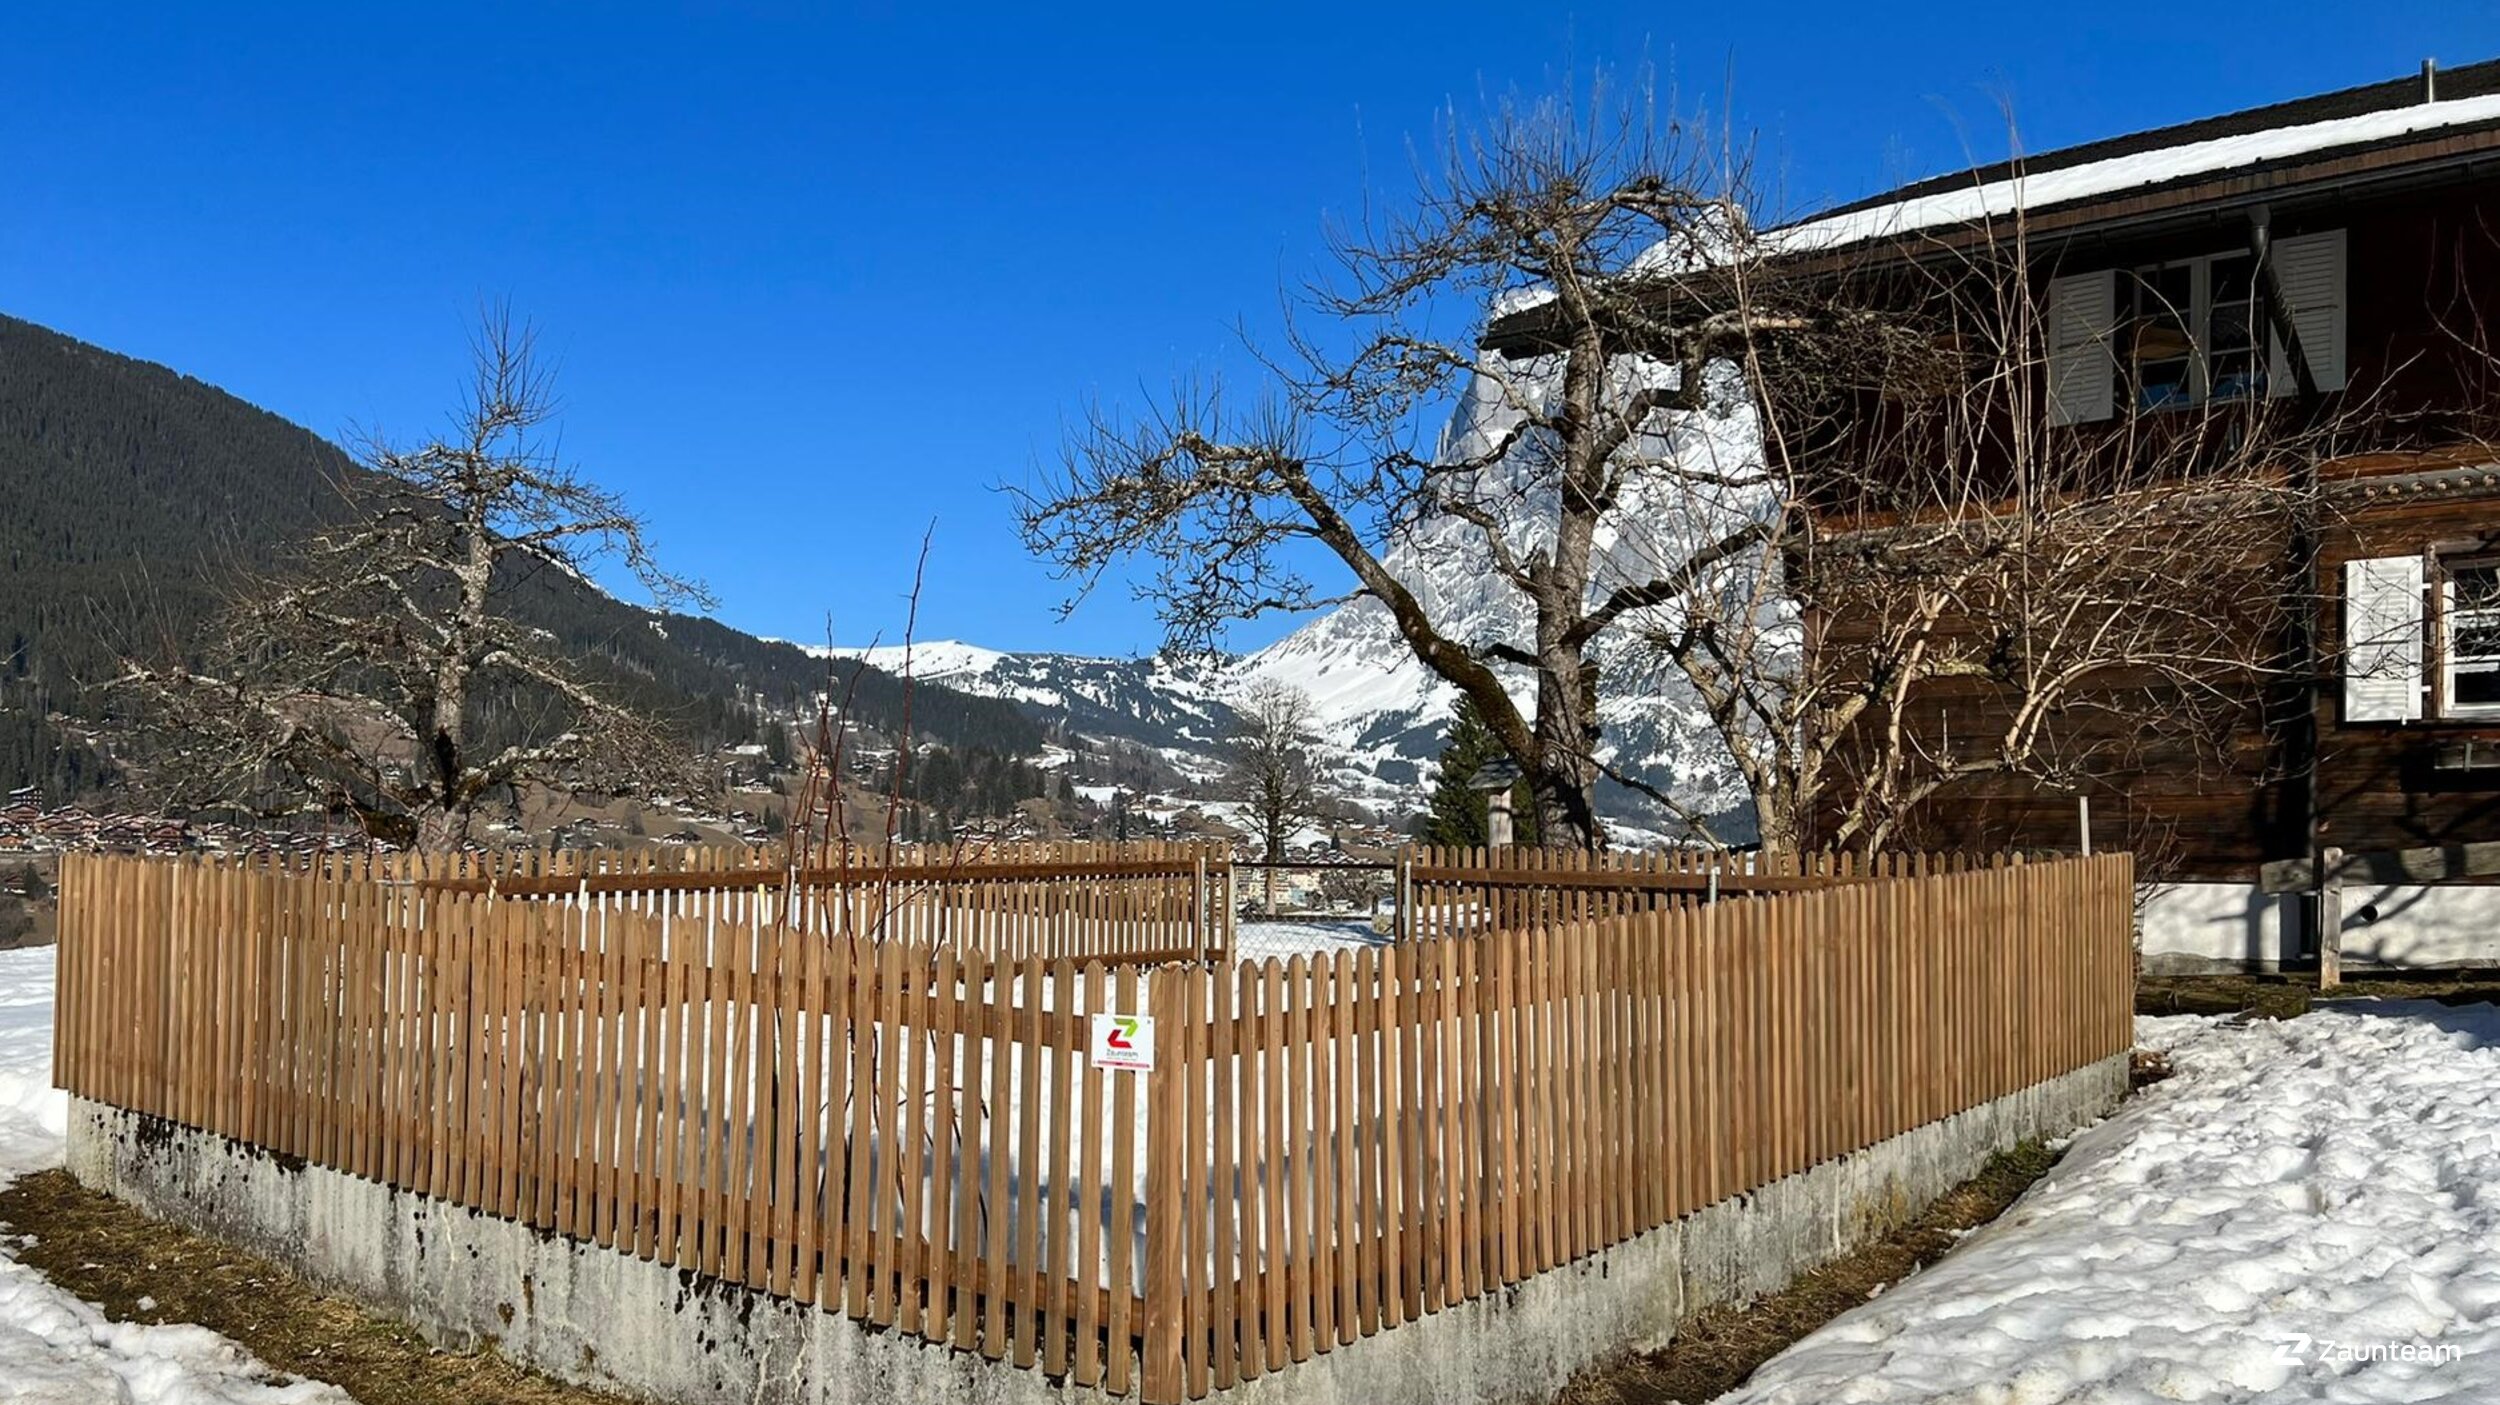 Staketenzaun aus dem 2022 in 3818 Grindelwald Schweiz von Zaunteam Berner Oberland.